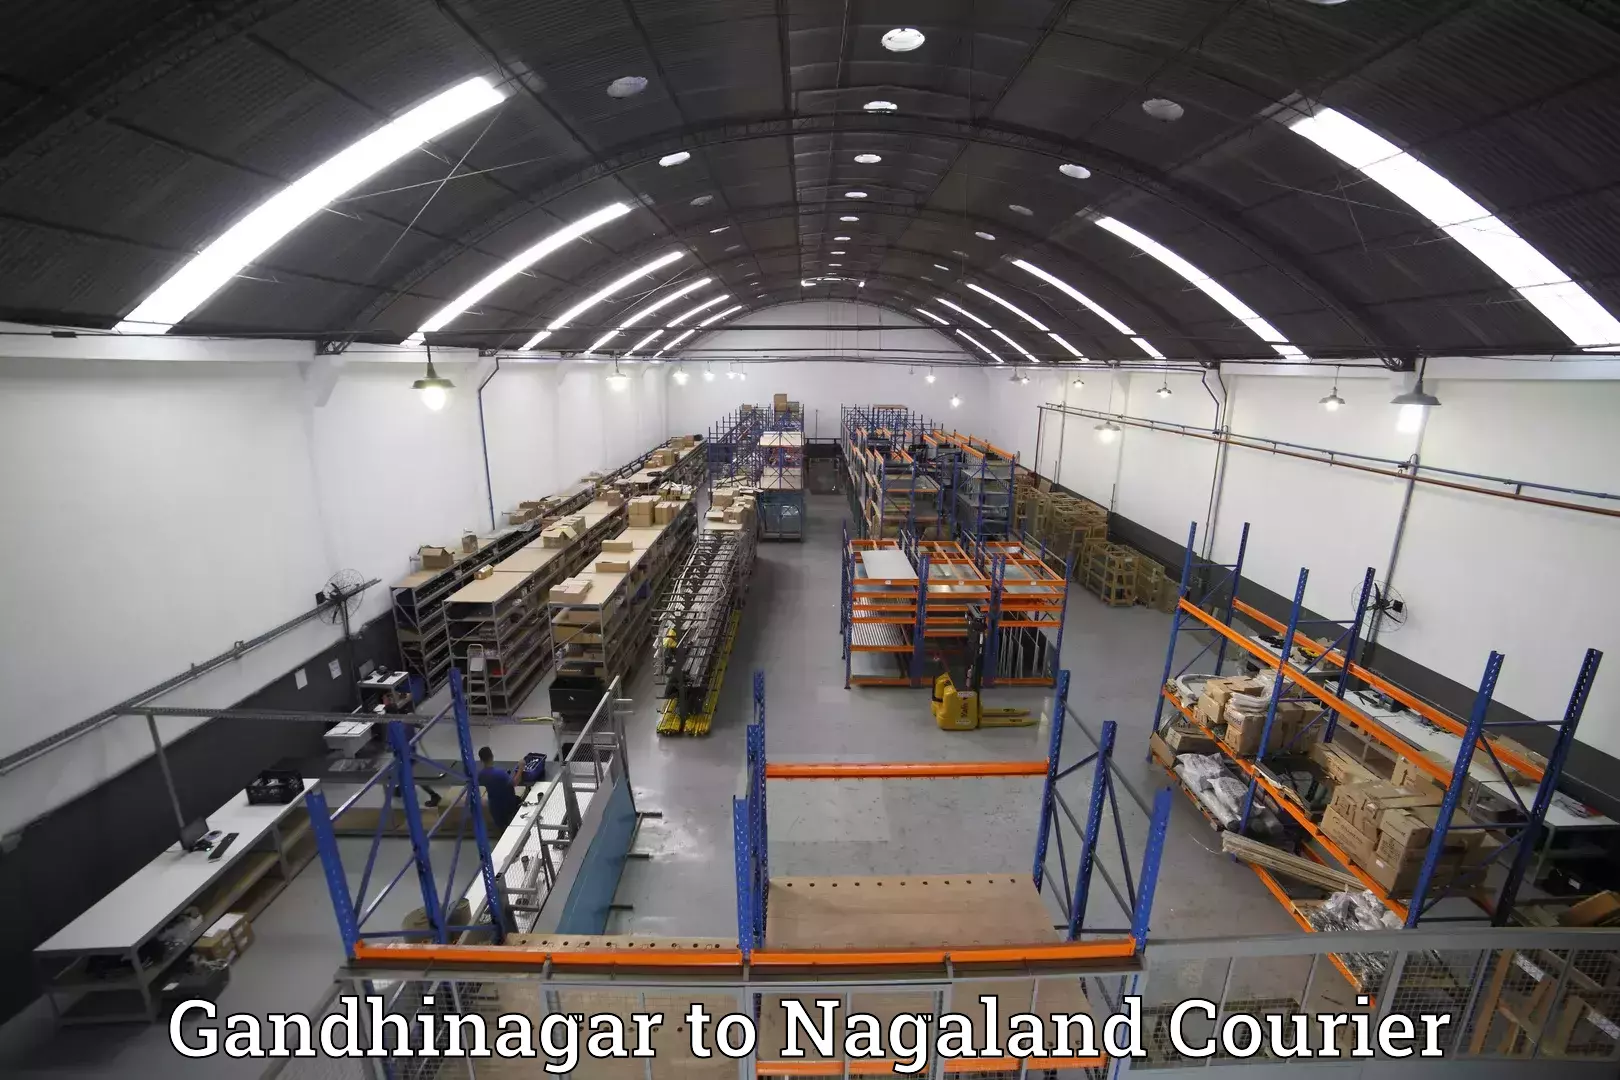 Baggage shipping experts Gandhinagar to Longleng